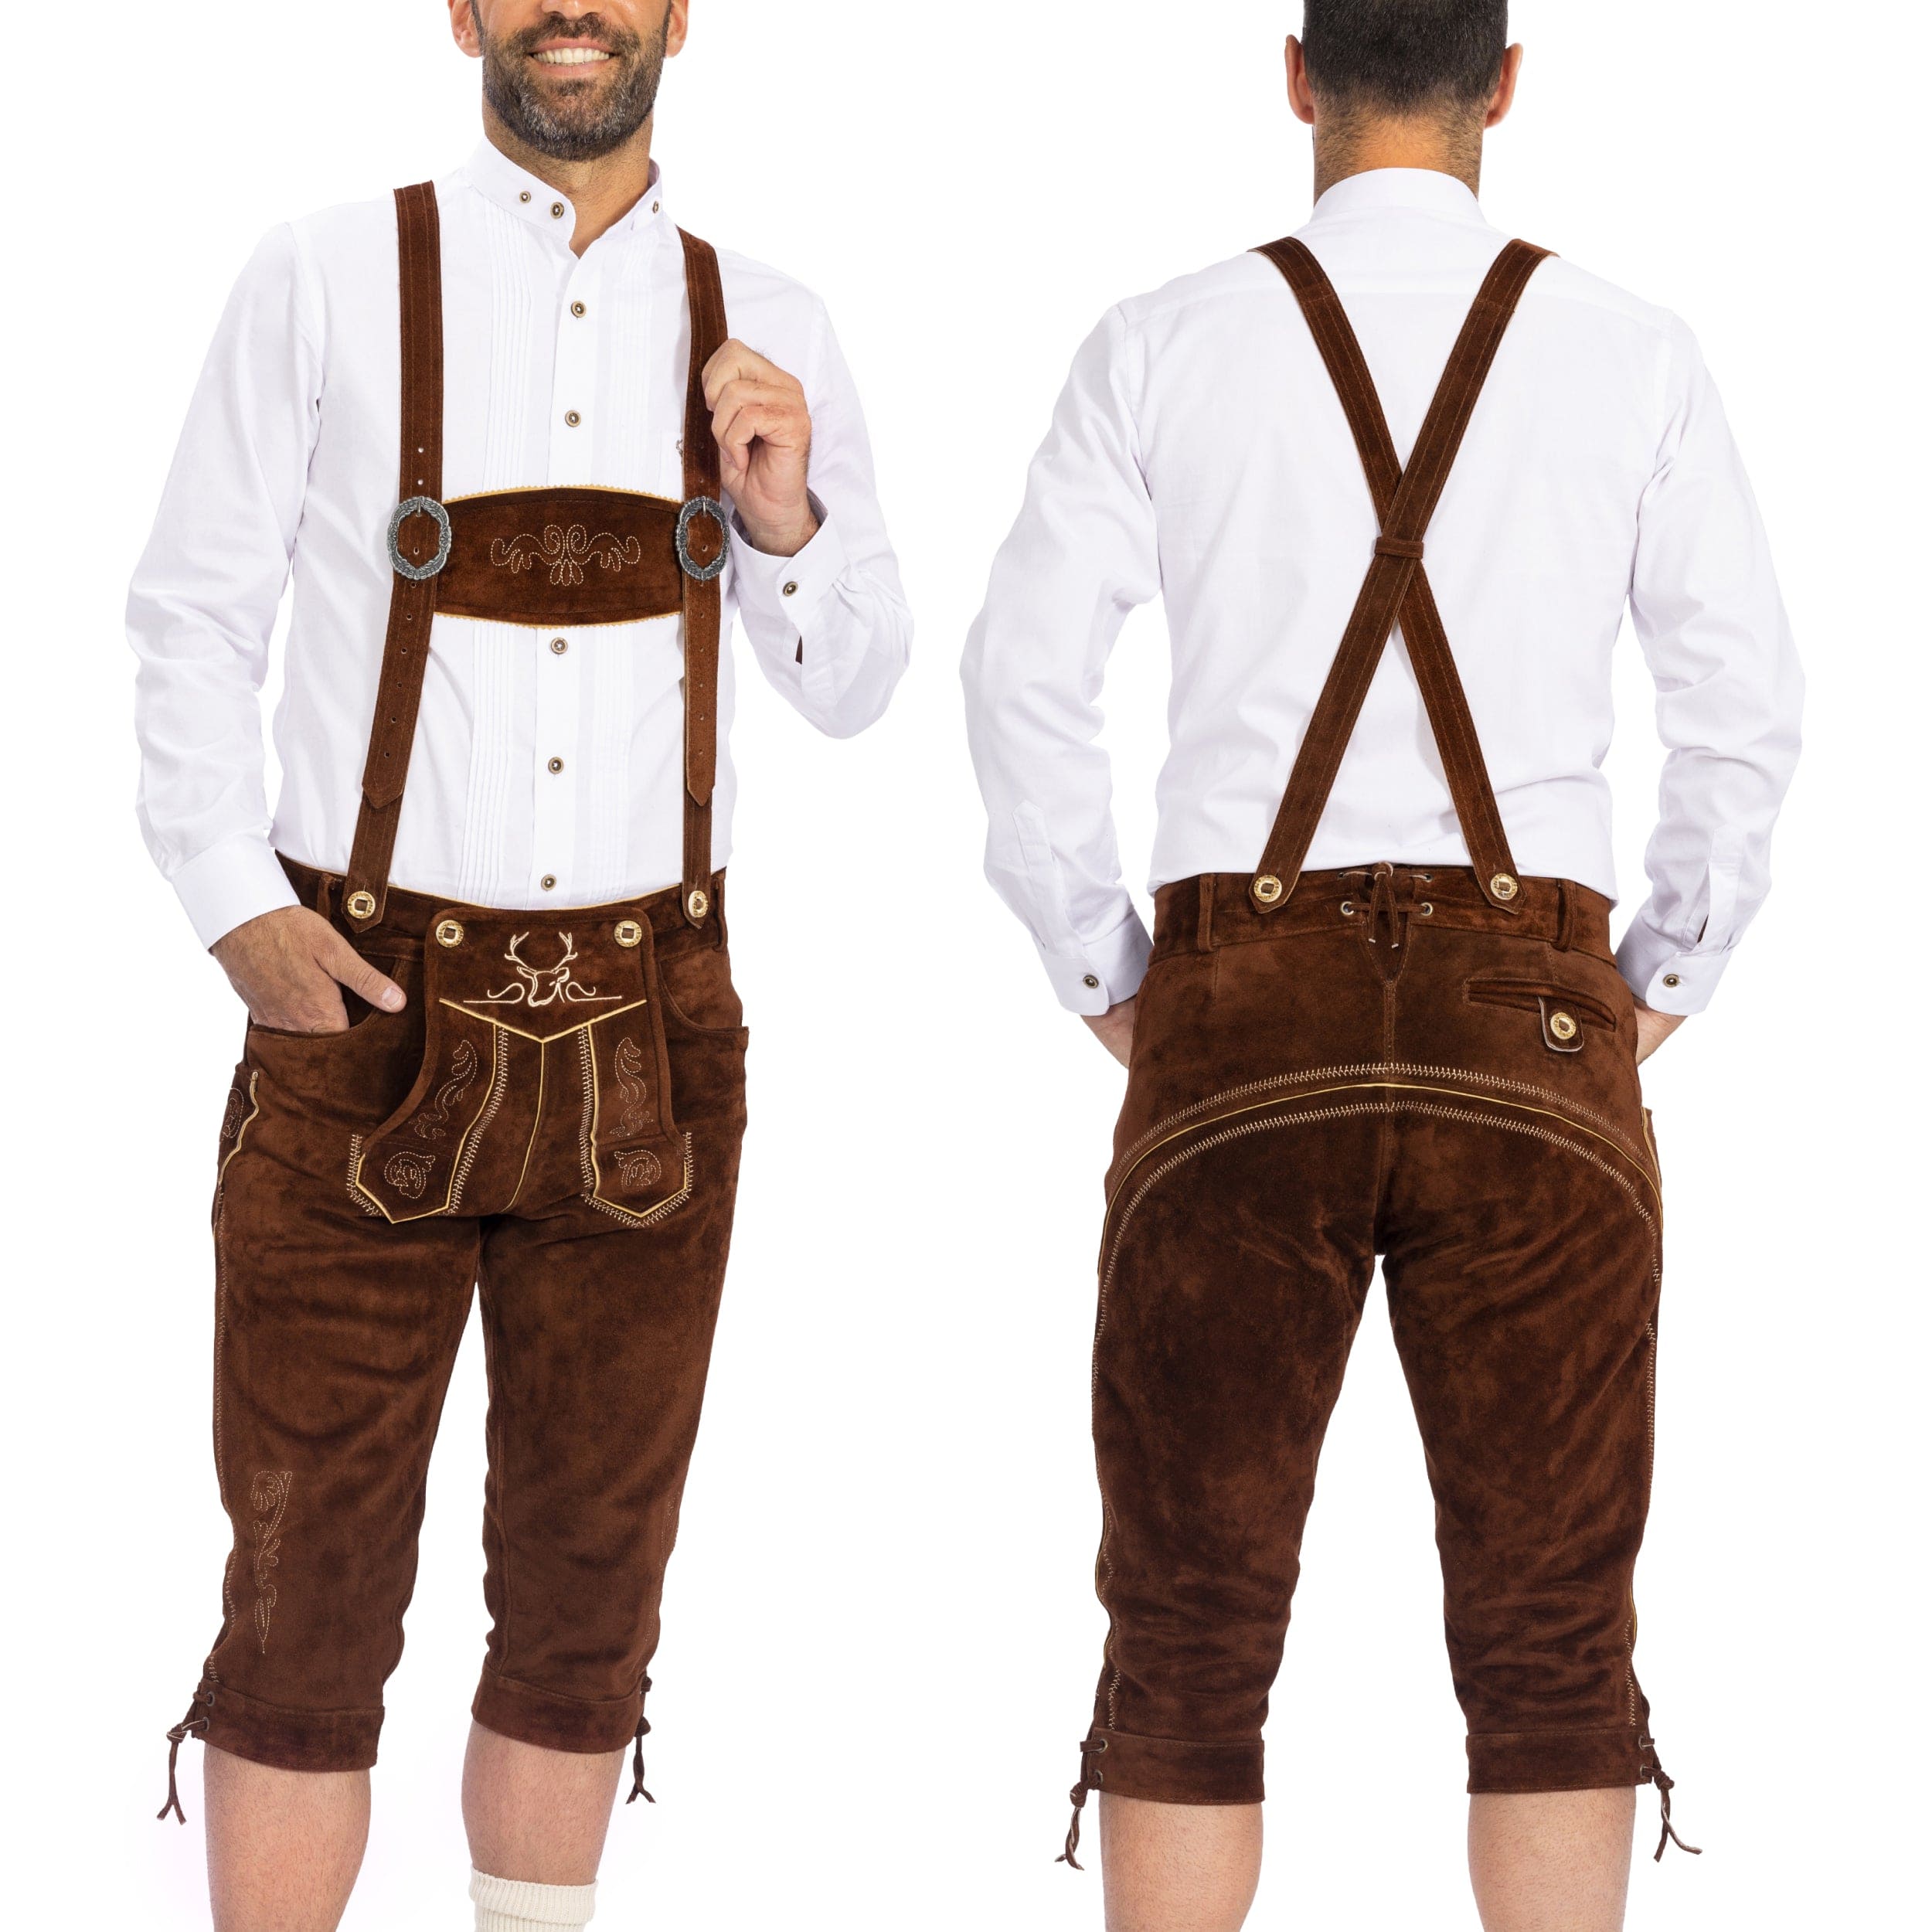 Bavaria Trachten Lederhosen Men Kneebound Dark Brown Oktoberfest 